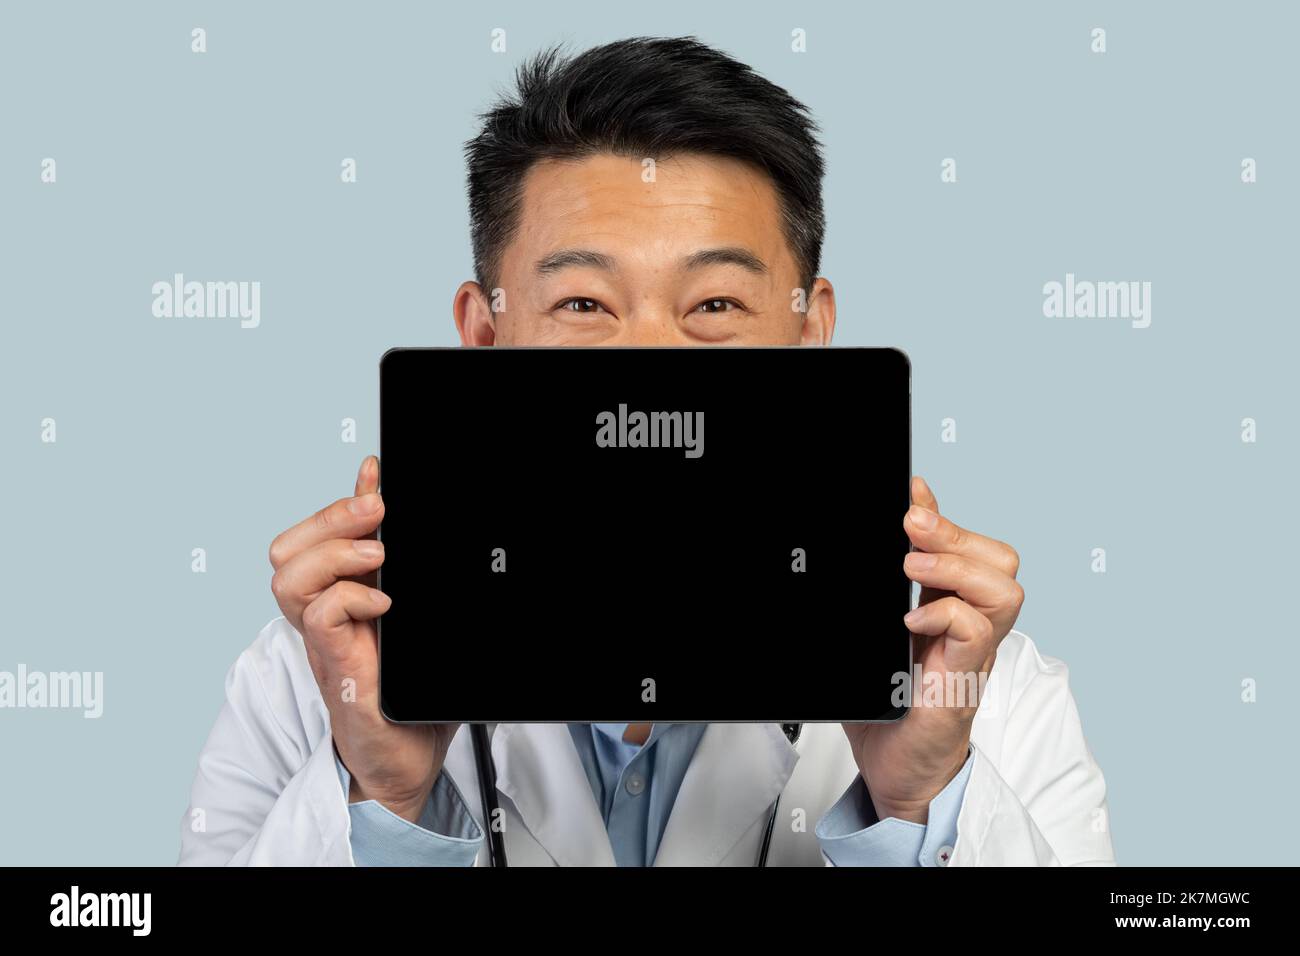 Un homme asiatique d'âge moyen souriant, sous un manteau blanc, montre une tablette avec écran vide Banque D'Images